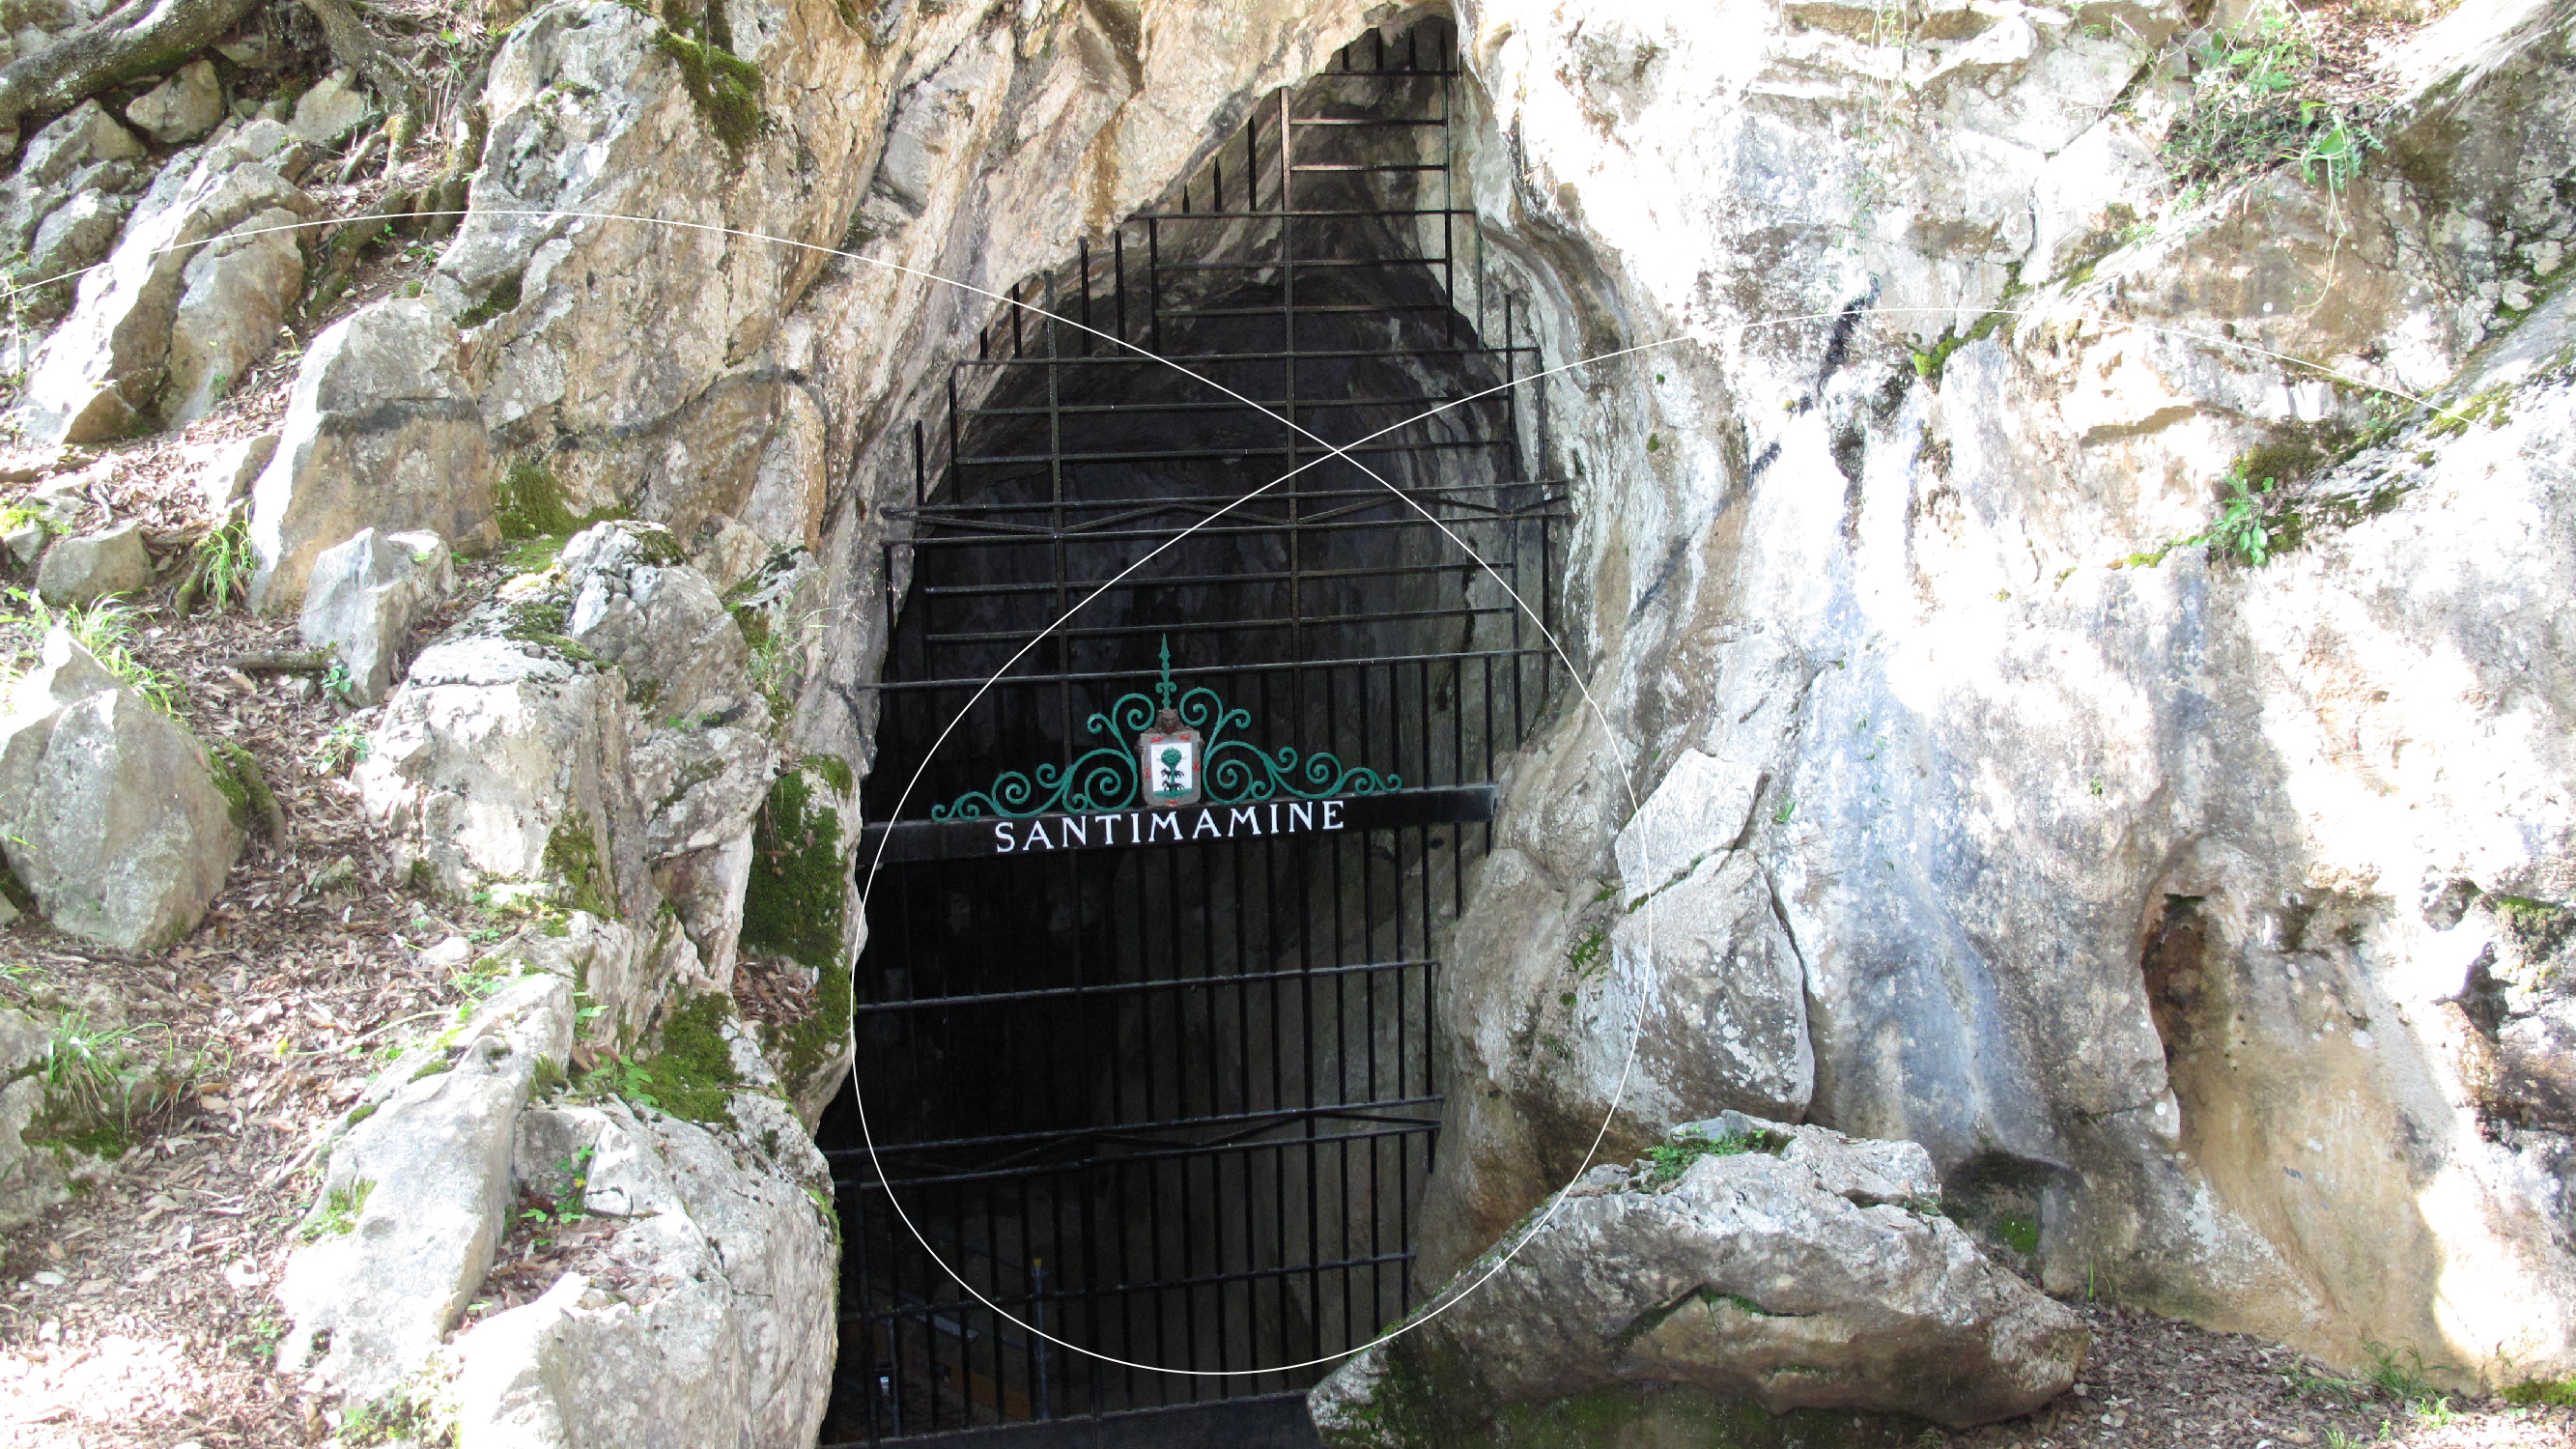 Cueva Santimamine